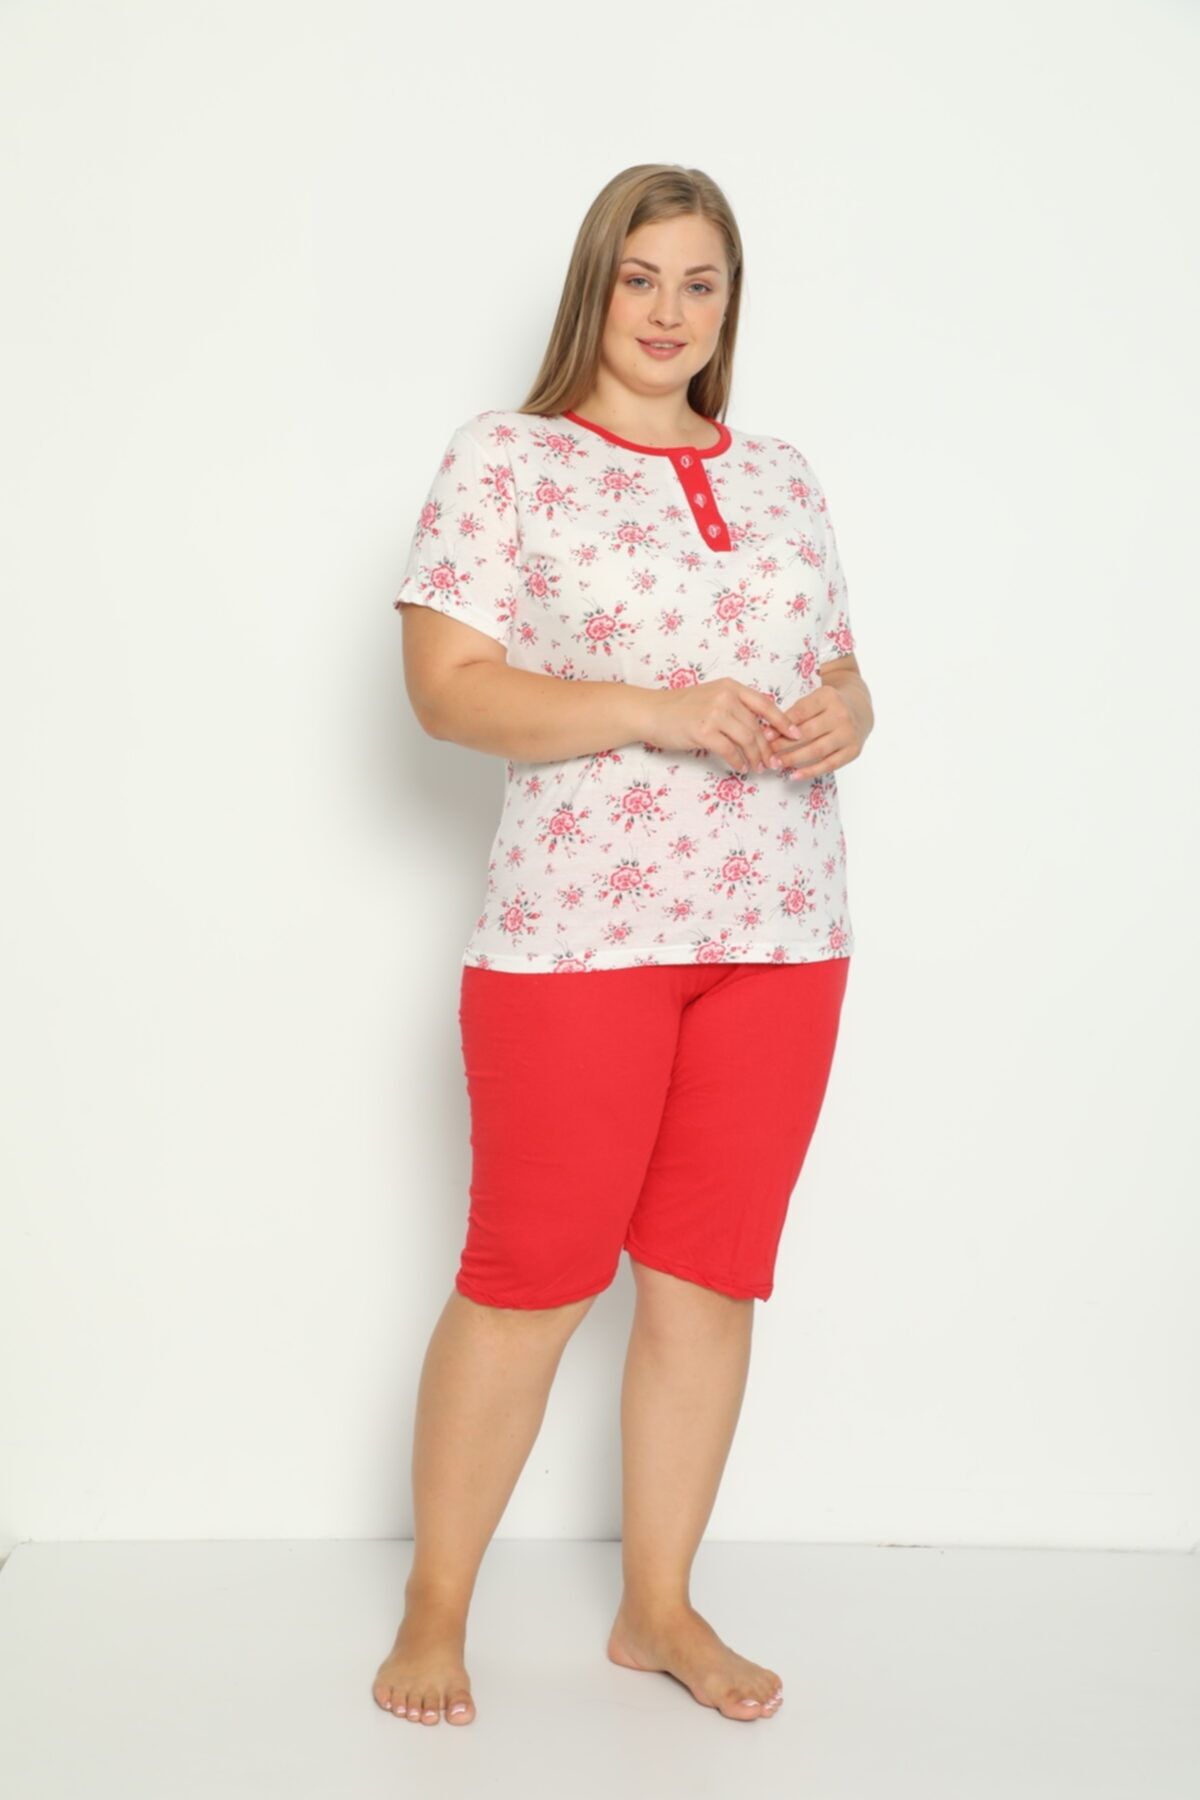 Tutkun Büyük Beden Bayan Pijama Takımı 11657 Kırmızı Model